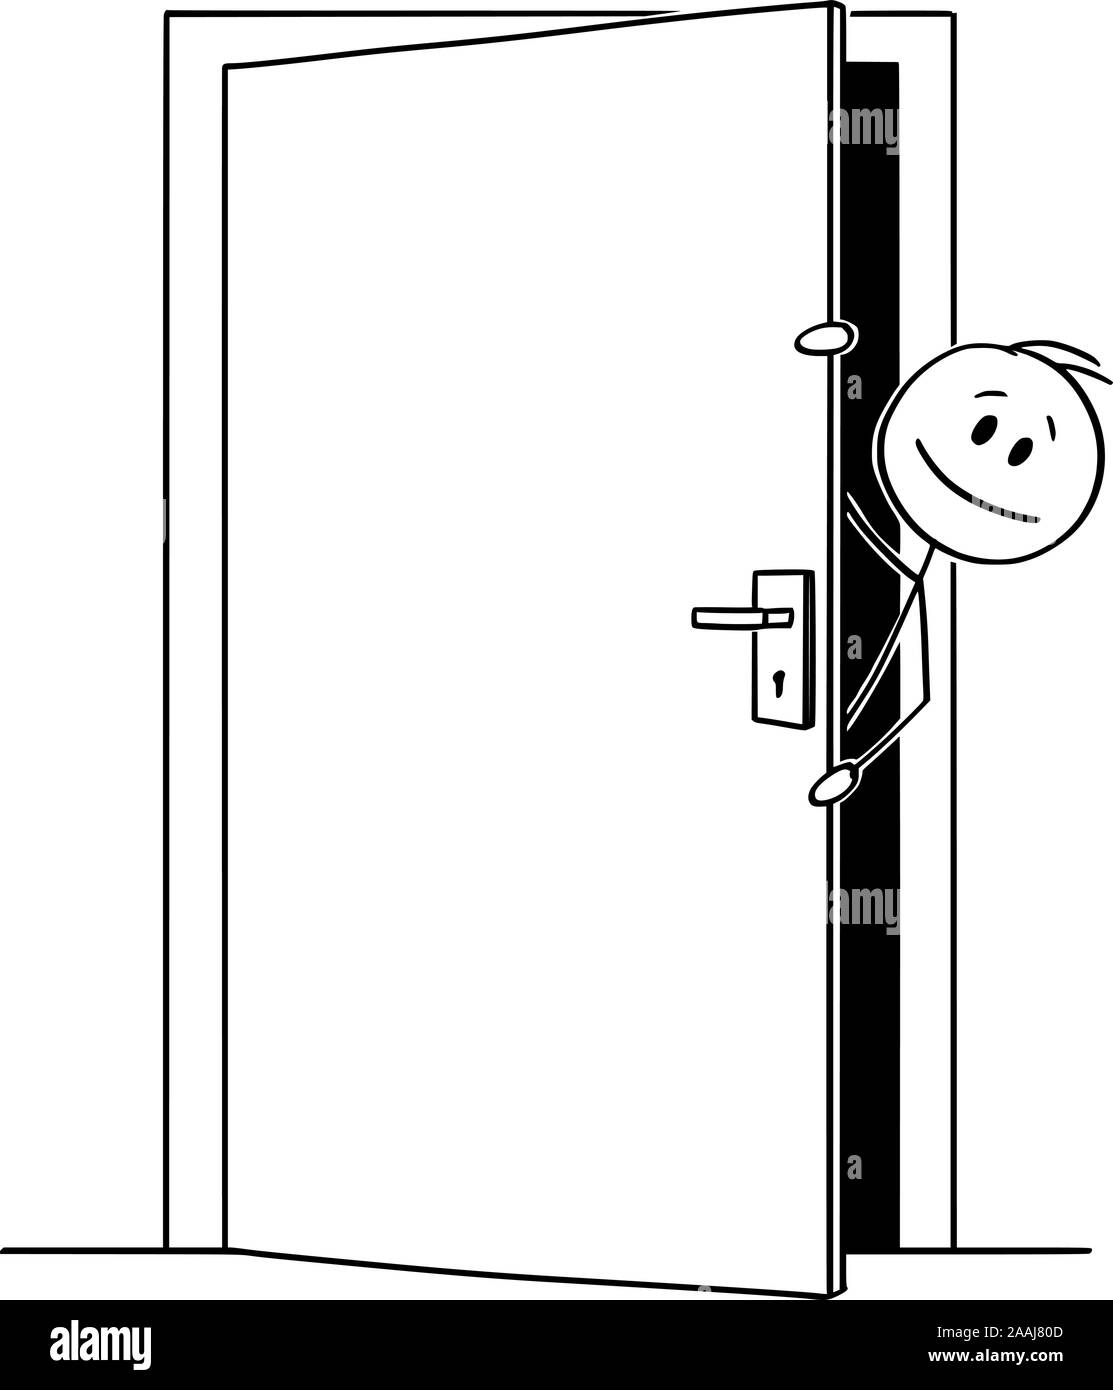 Vektor cartoon Strichmännchen Zeichnen konzeptionelle Darstellung der Mann oder Geschäftsmann heraus lugen oder schauen aus dem leicht geöffneten Tür. Stock Vektor